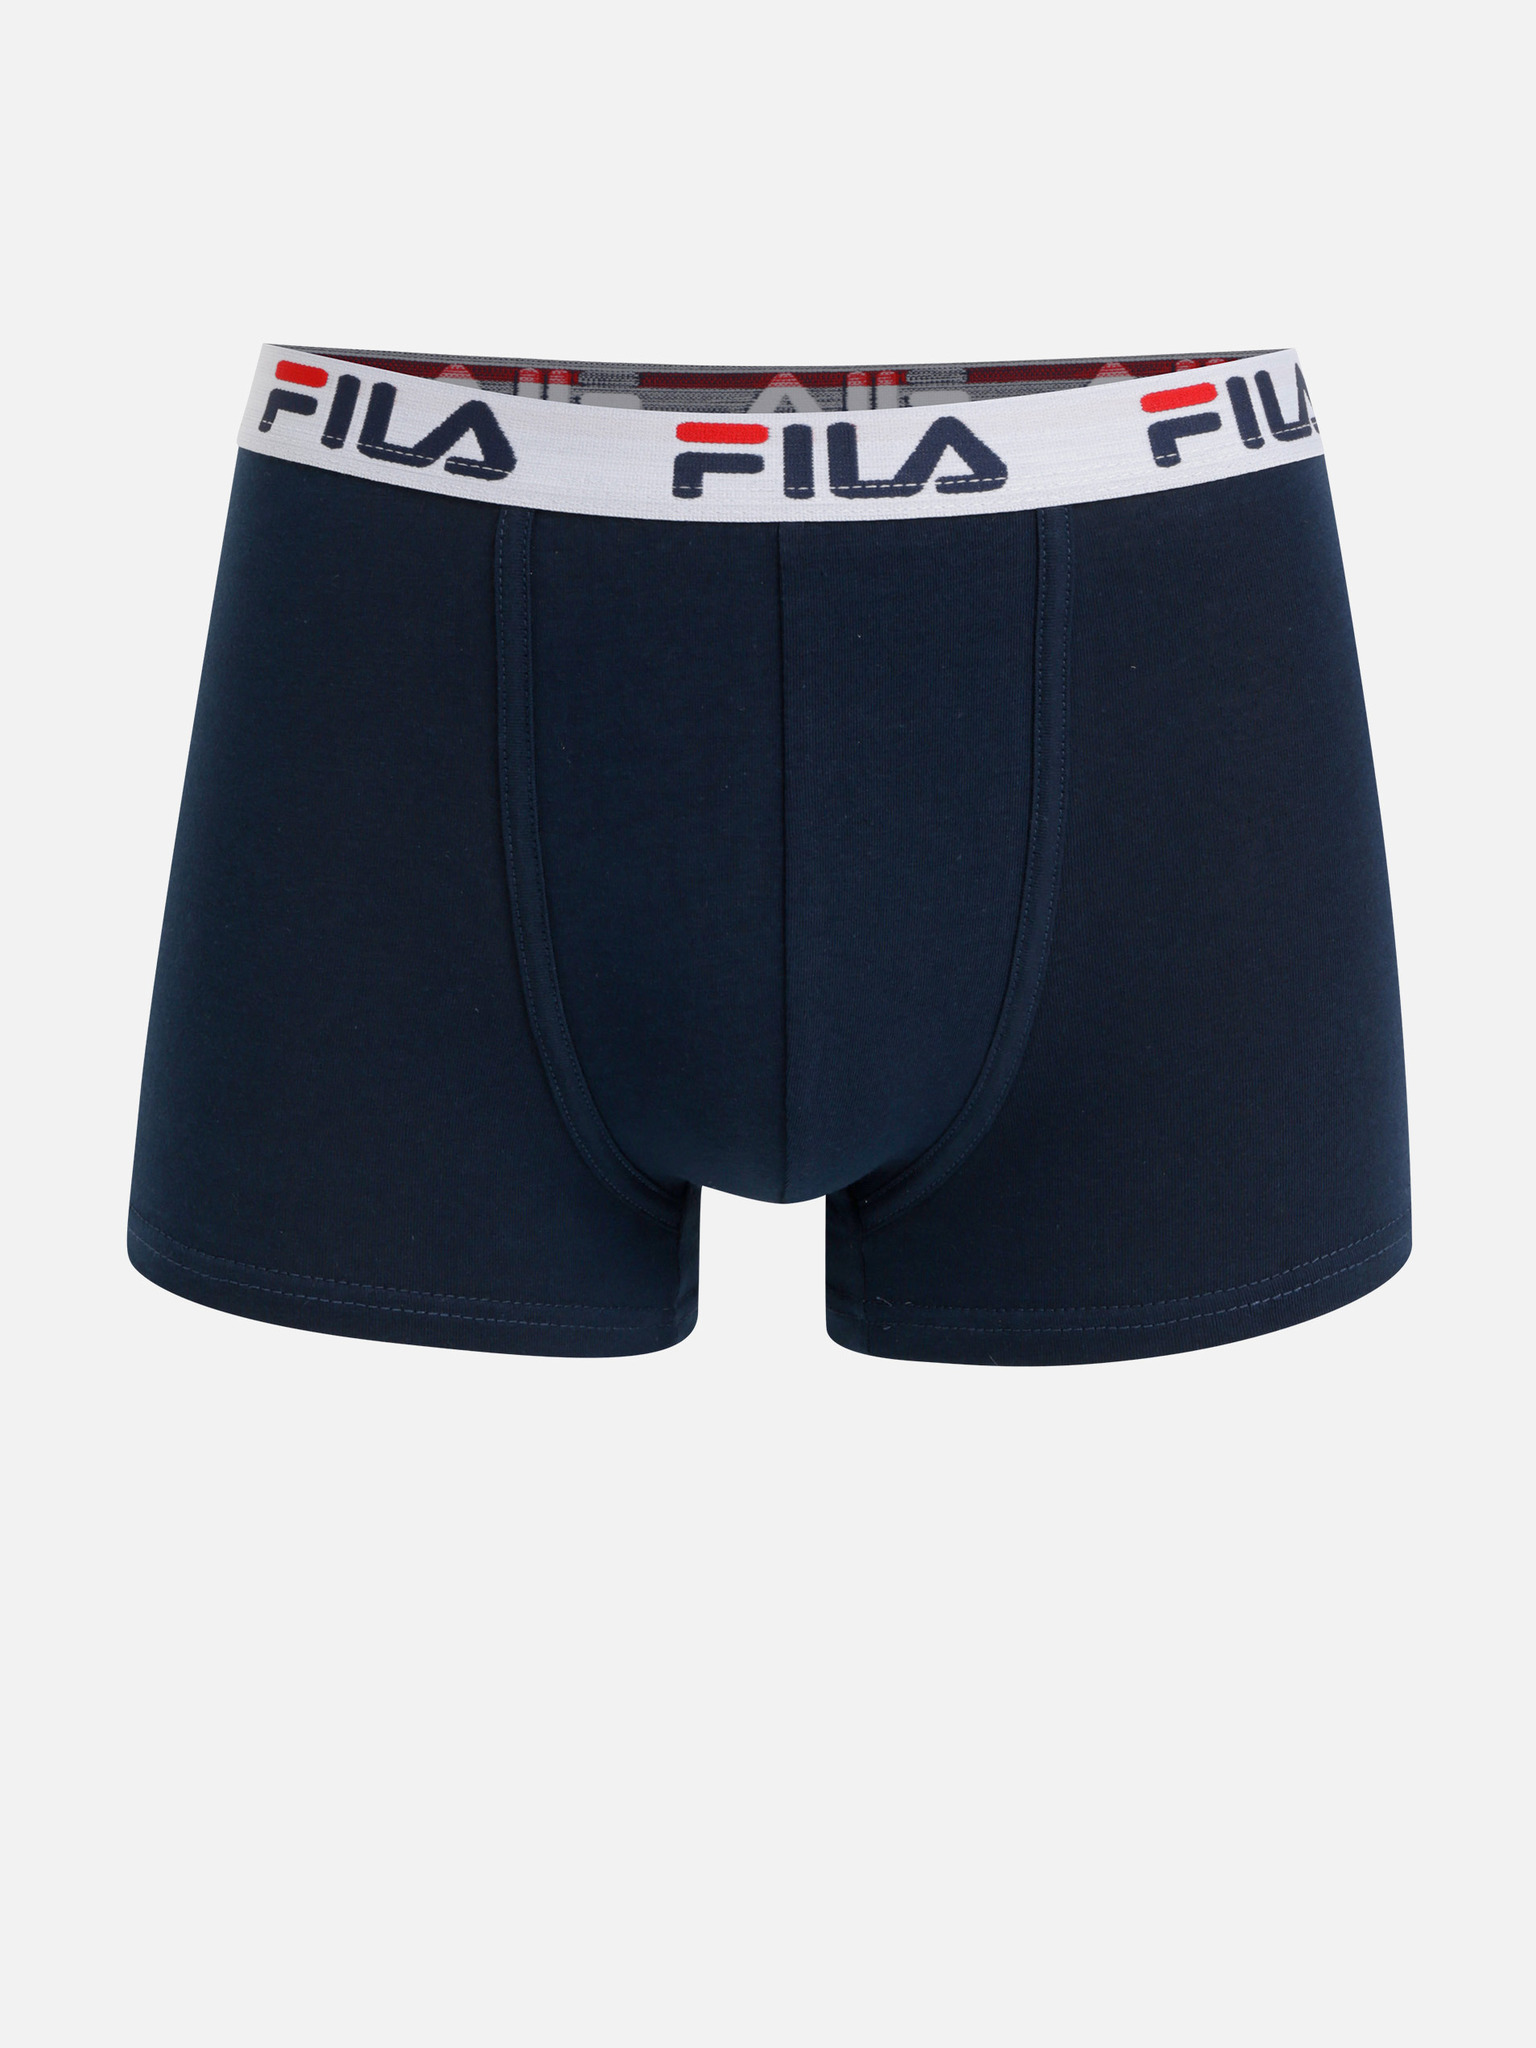 Fila Underwear